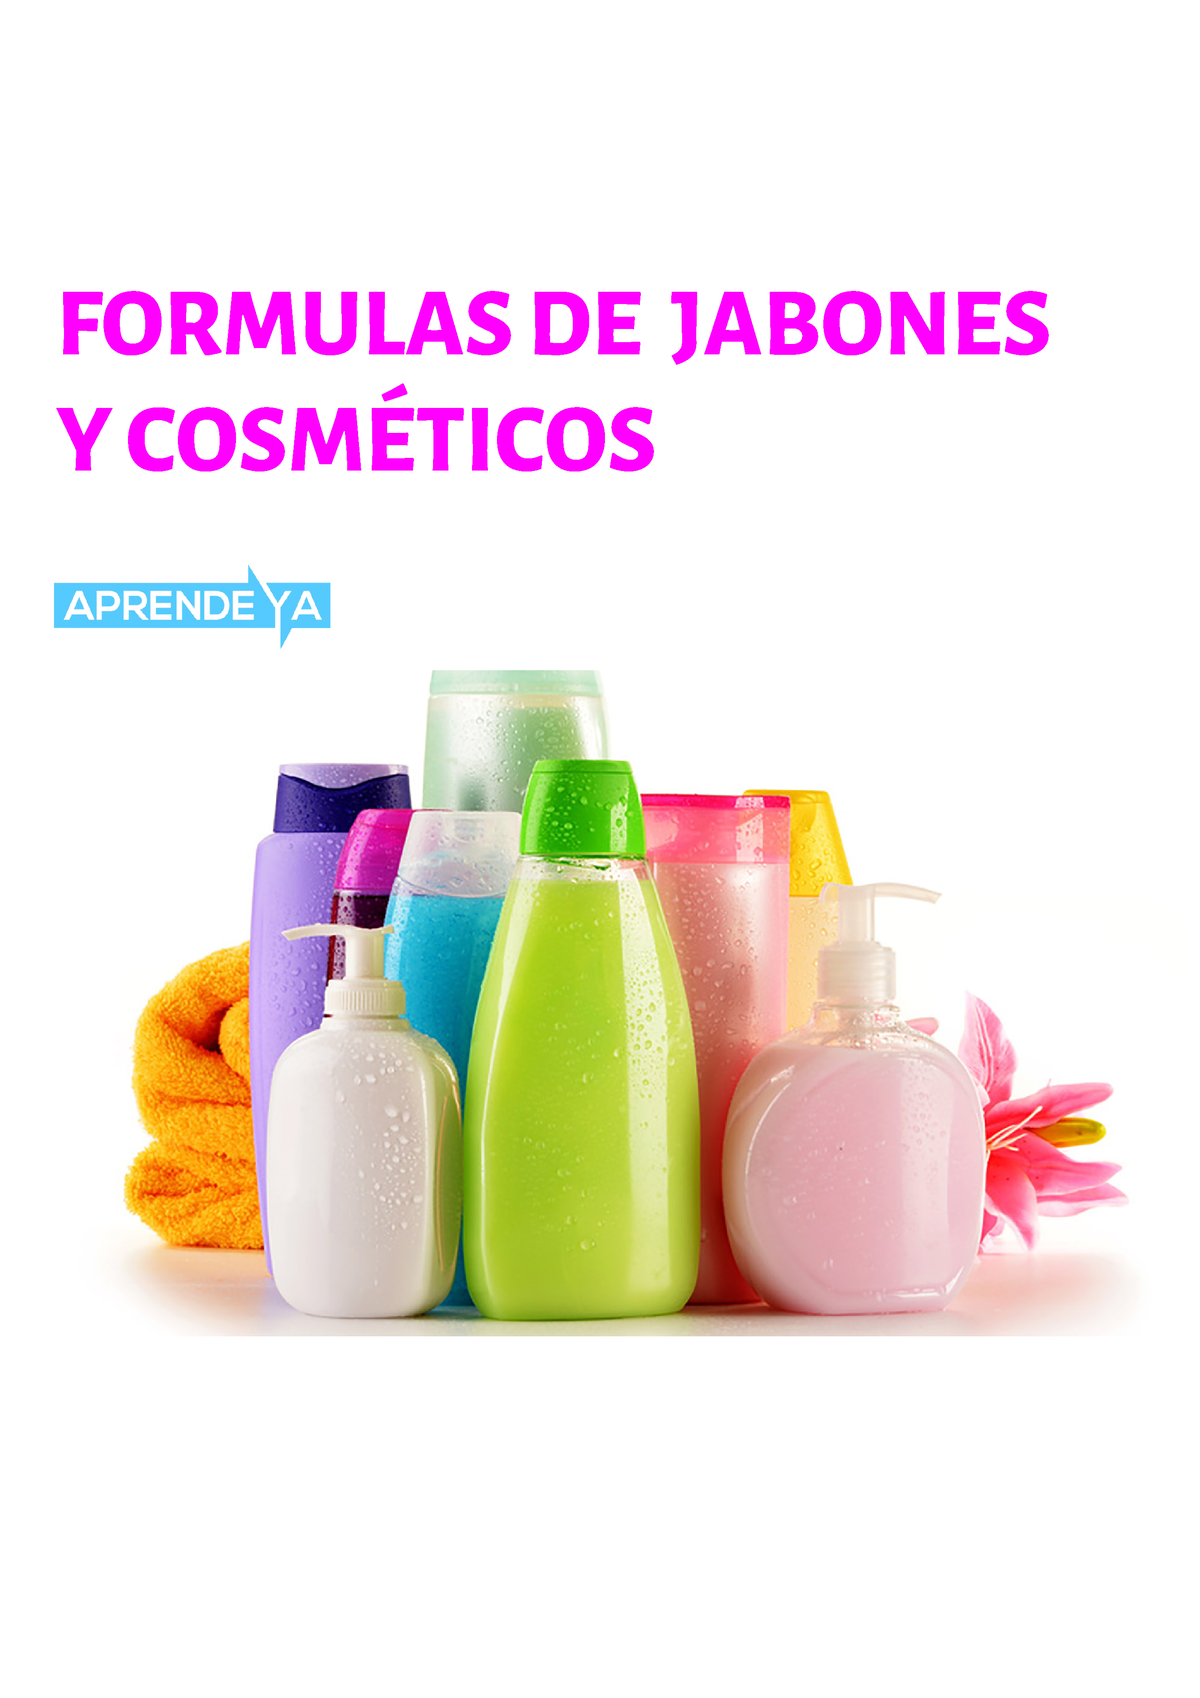 Formulas De Jabones Y Cosmeticos Formulas De Jabones Y CosmÉticos Contenido 1 Jabones 2 3194